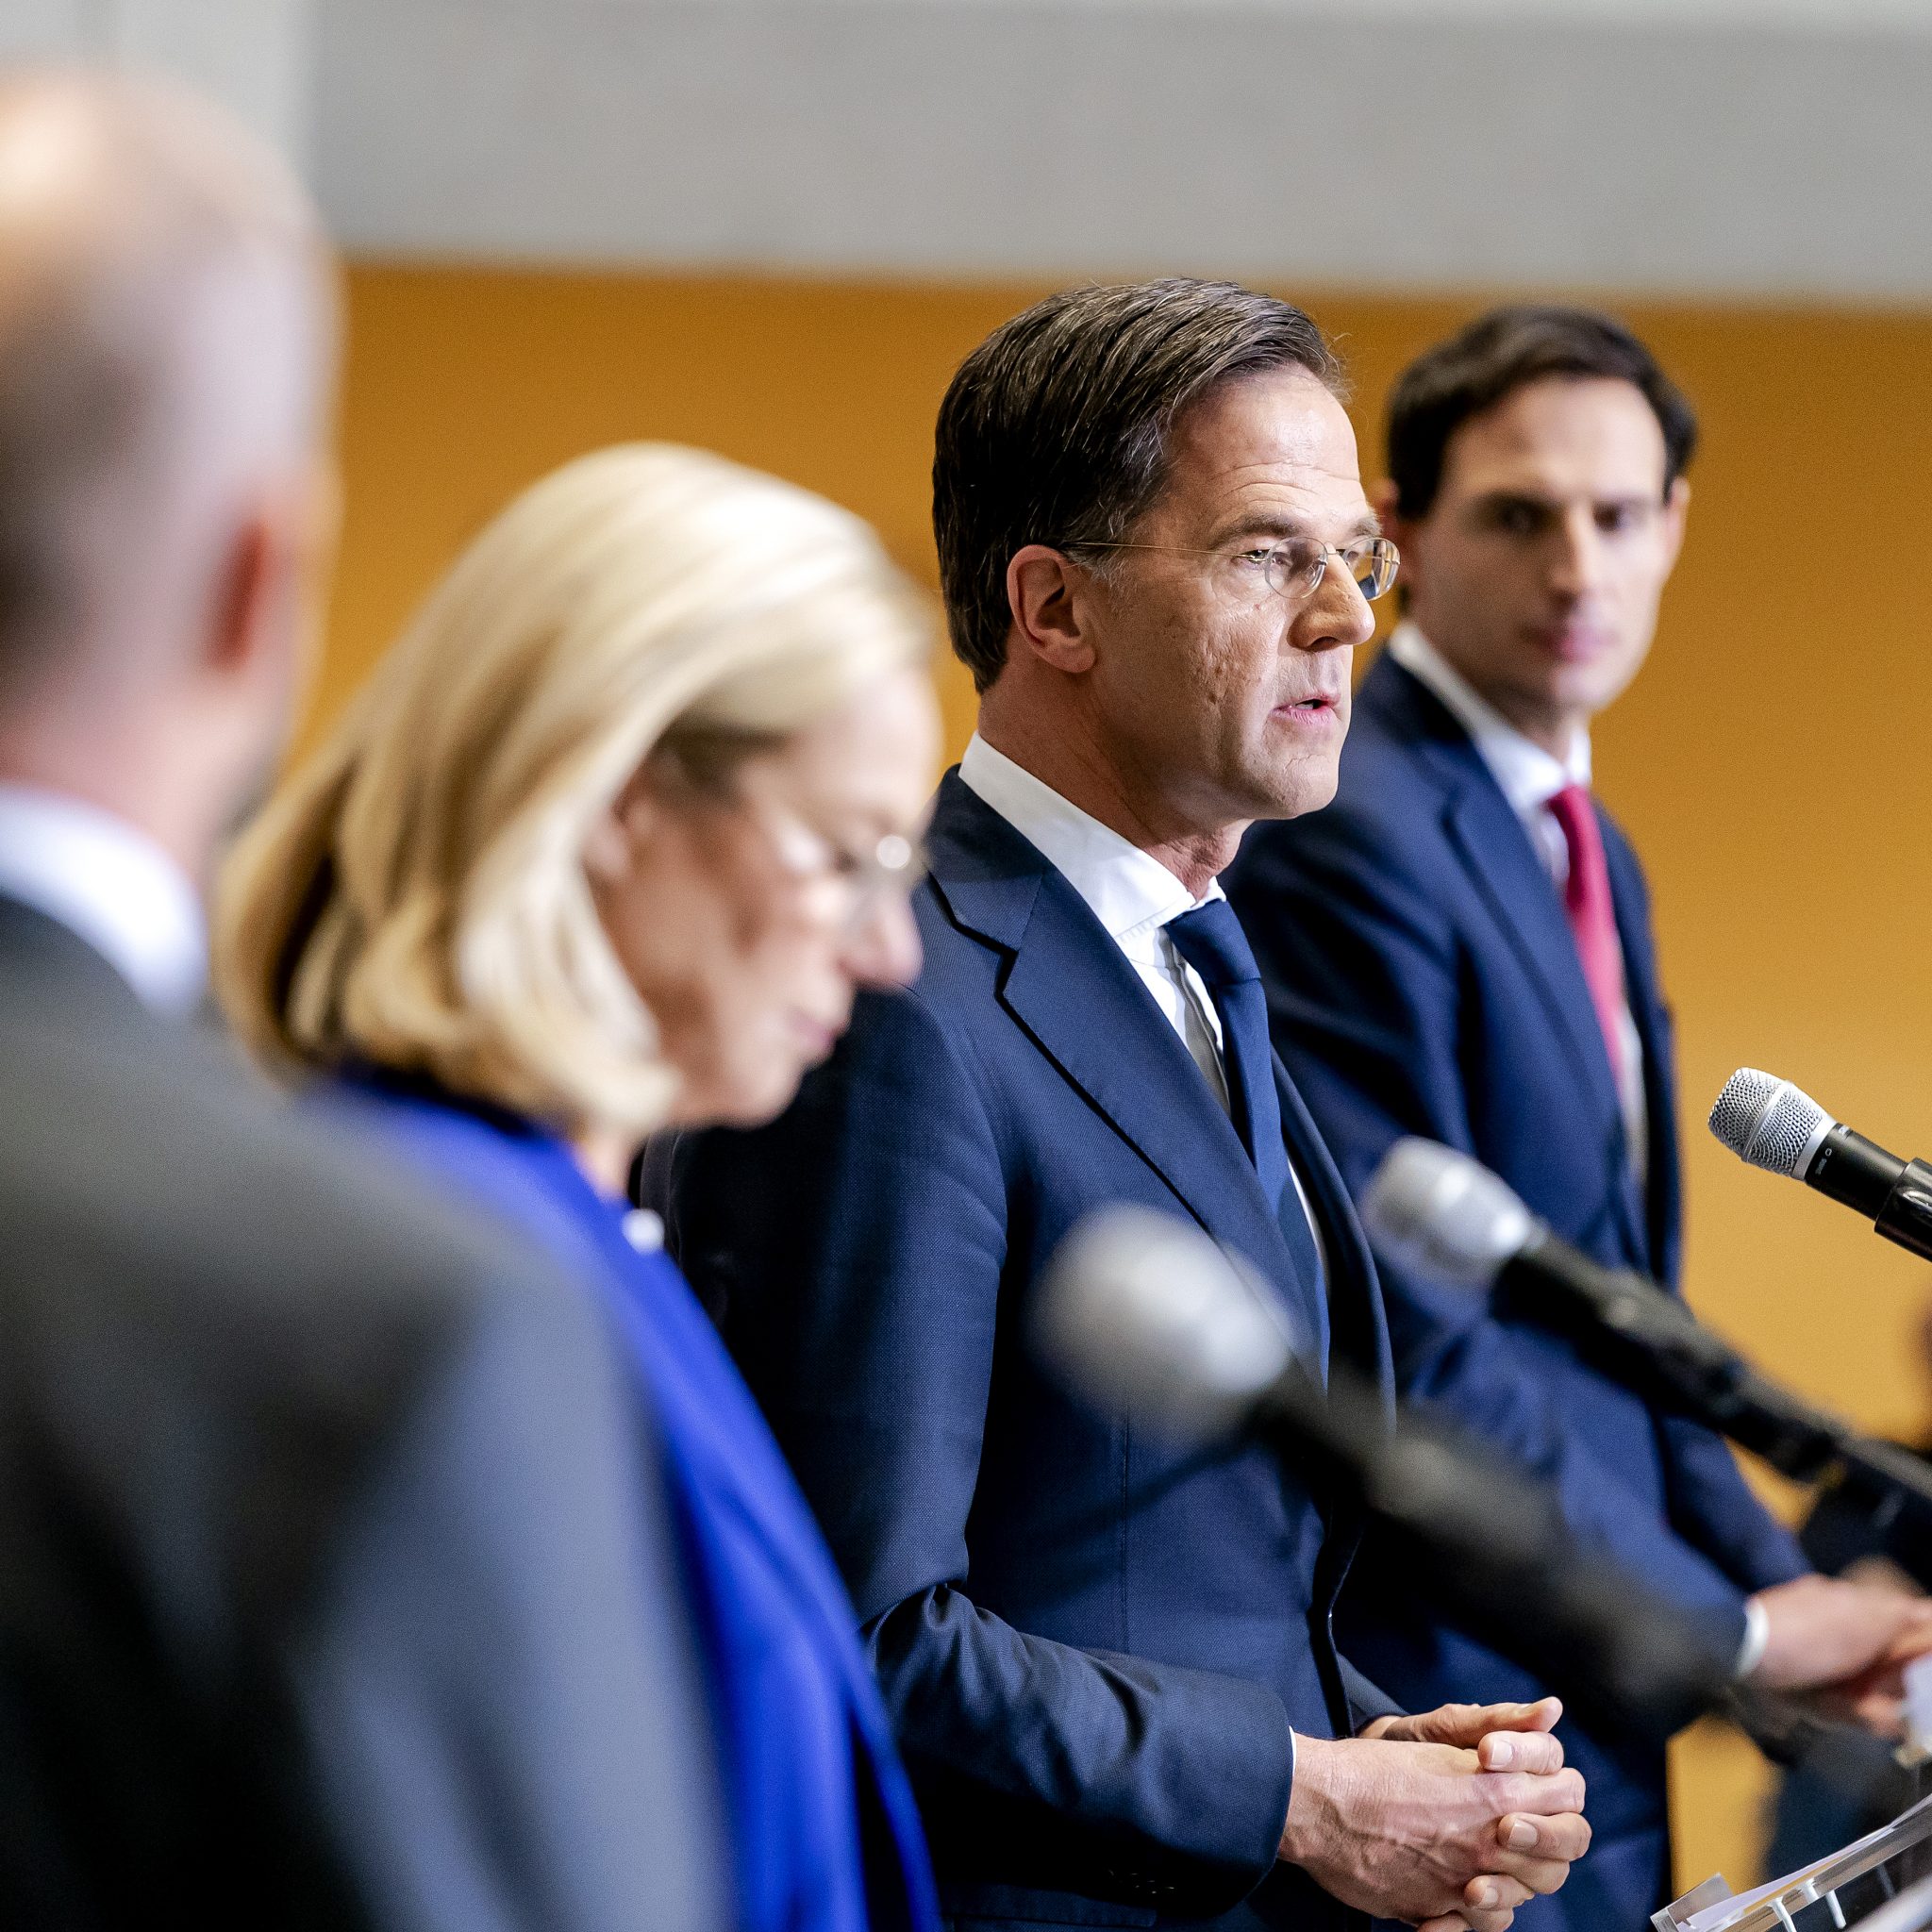 De fractieleiders van de partijen die samen het kabinet Rutte IV gaan vormen. V.l.n.r. Gert-Jan Segers (ChristenUnie), Sigrid Kaag (D66), Mark Rutte (VVD) en Wobke Hoekstra (CDA). Van Rutte en Hoekstra is zeker dat zij zitting nemen in het kabinet. Segers blijft in de Tweede Kamer, Kaag heeft nog geen keuze gemaakt. (Foto ANP)